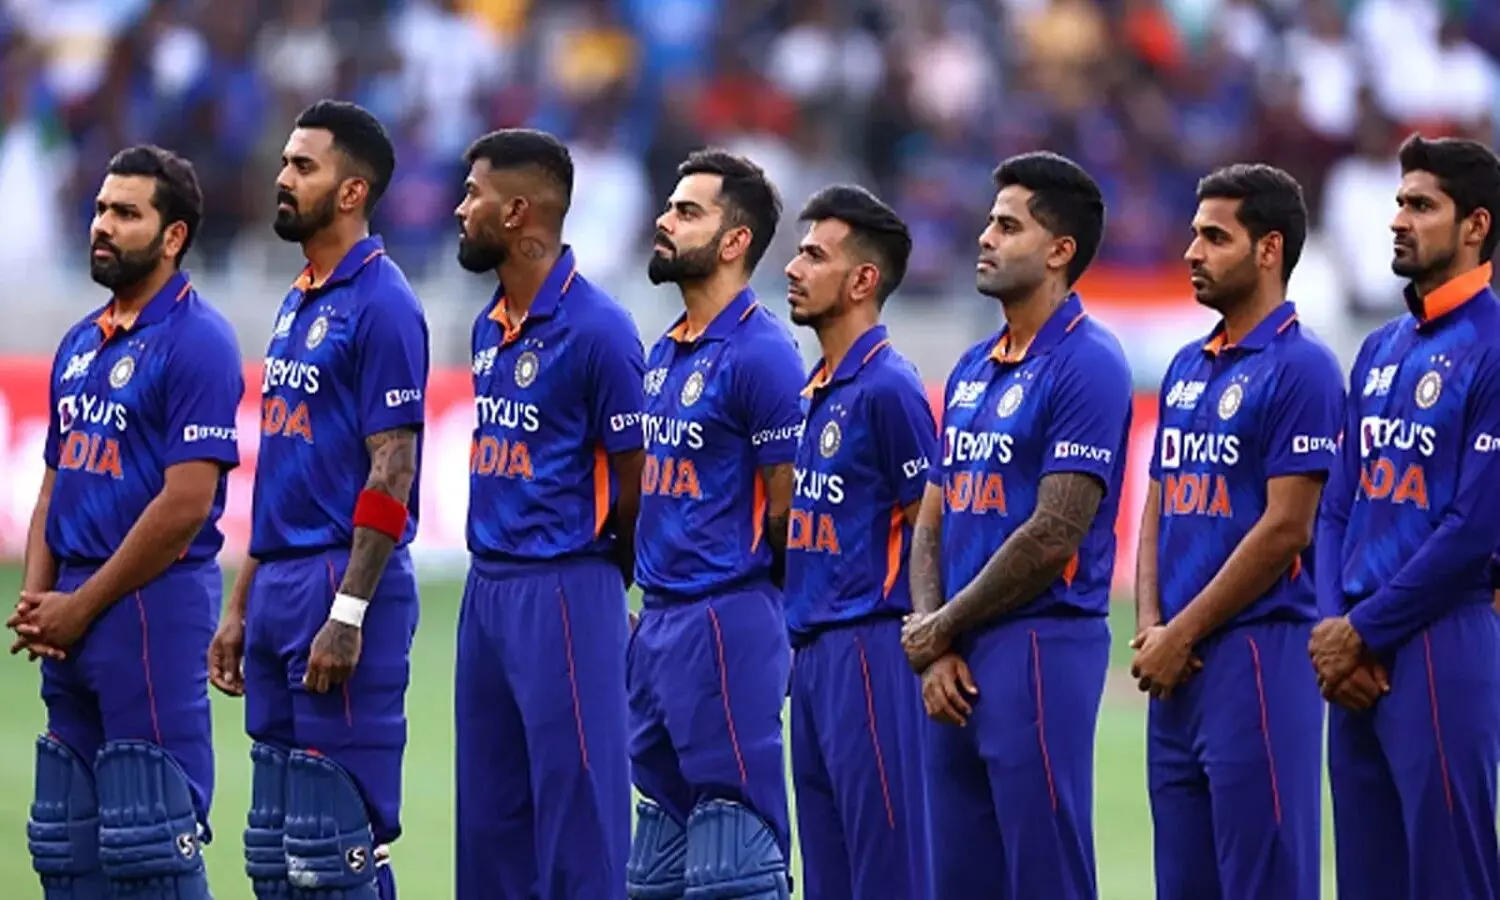 Upcoming International Matches Of Indian Cricket Team: WTC के बाद टीम इंडिया का इंटरनेशनल मैच शेड्यूल